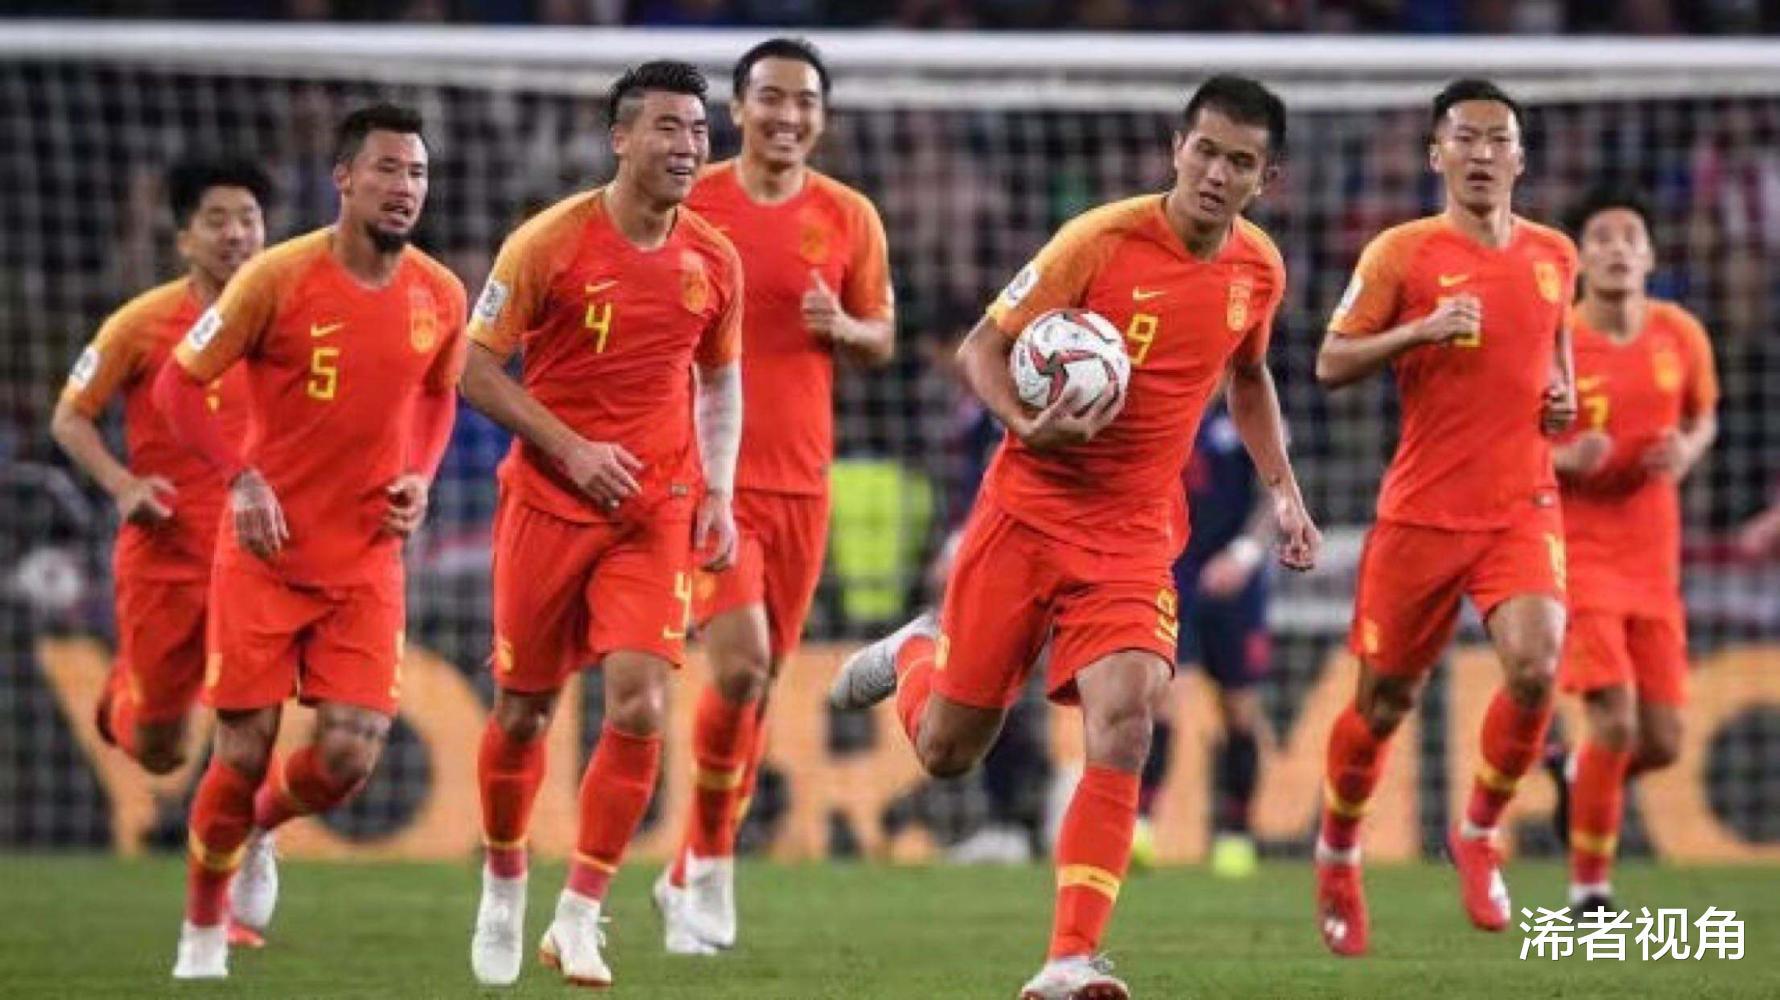 下午1点! 资深名记做出争议表态: 将中国足球逼入绝境, 球迷骂声一片(1)